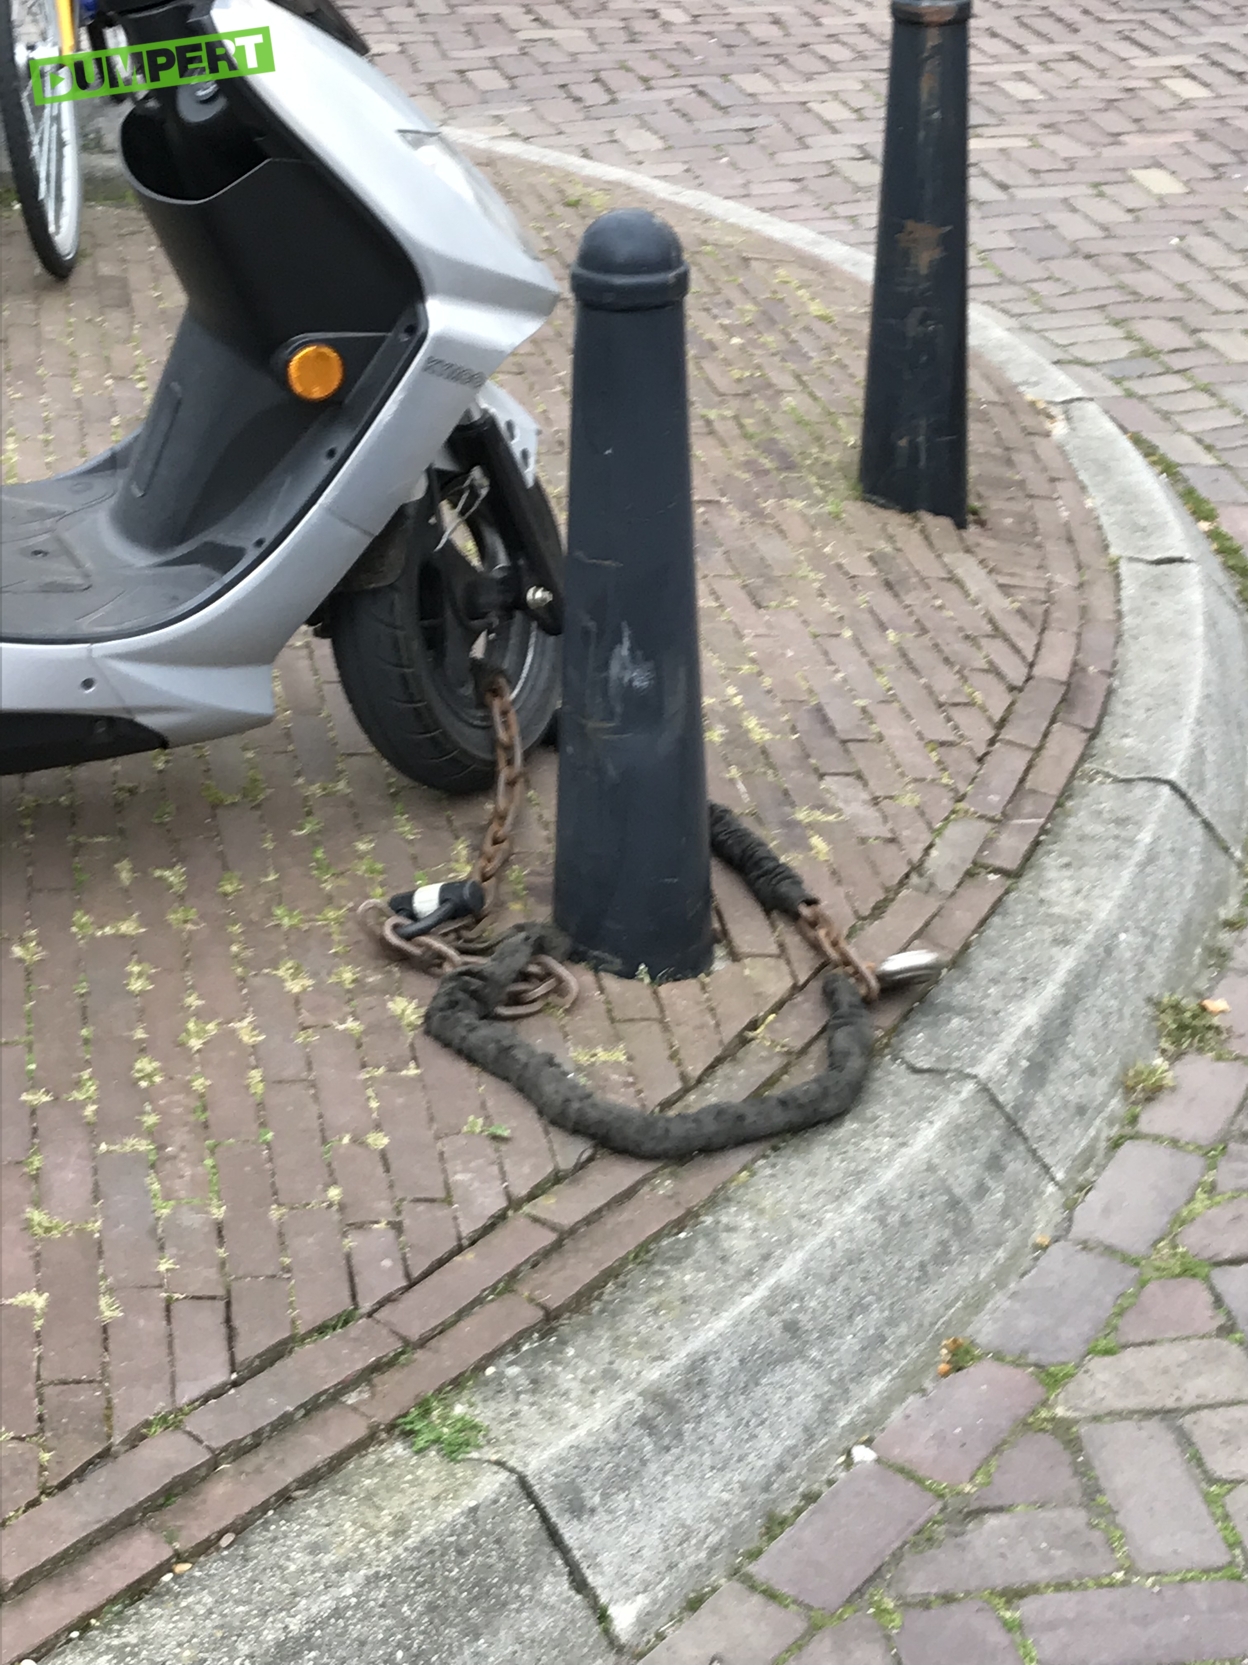 kralen nek Ruilhandel dumpert.nl - Scooter veilig op slot gezet